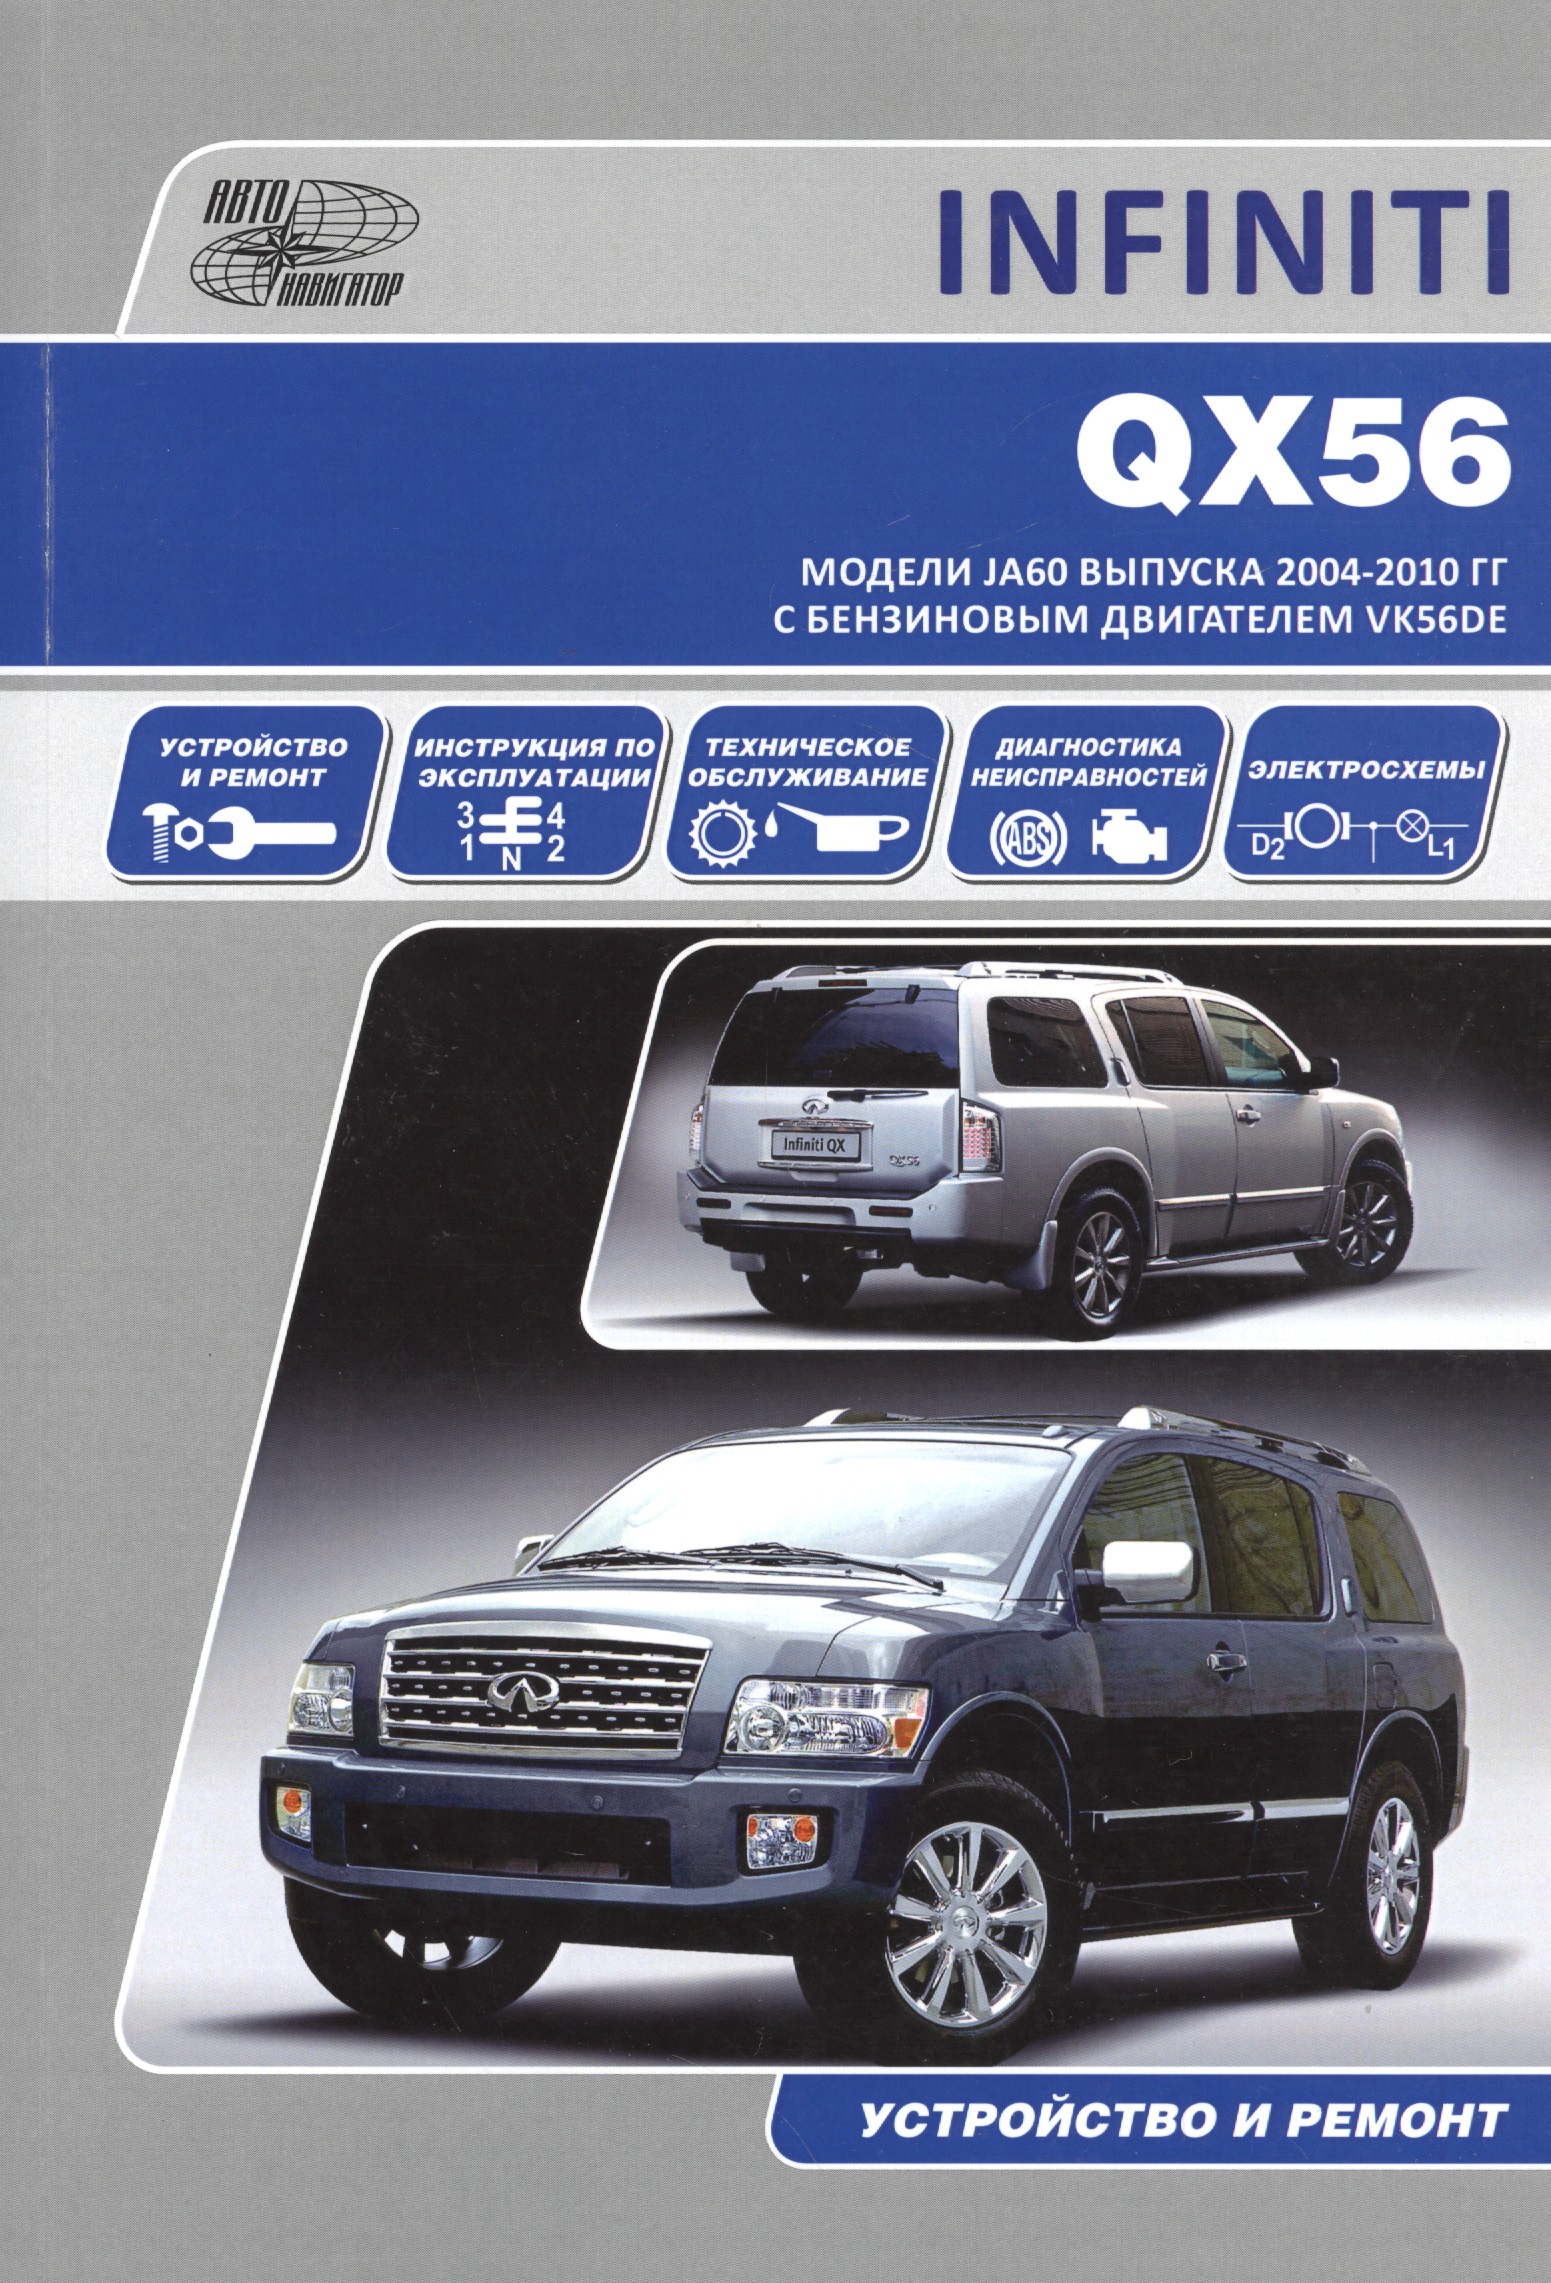 Infiniti QX56 Мод. JA60 вып. 2004-2010 гг. с бенз. двигат. VK56DE (м)